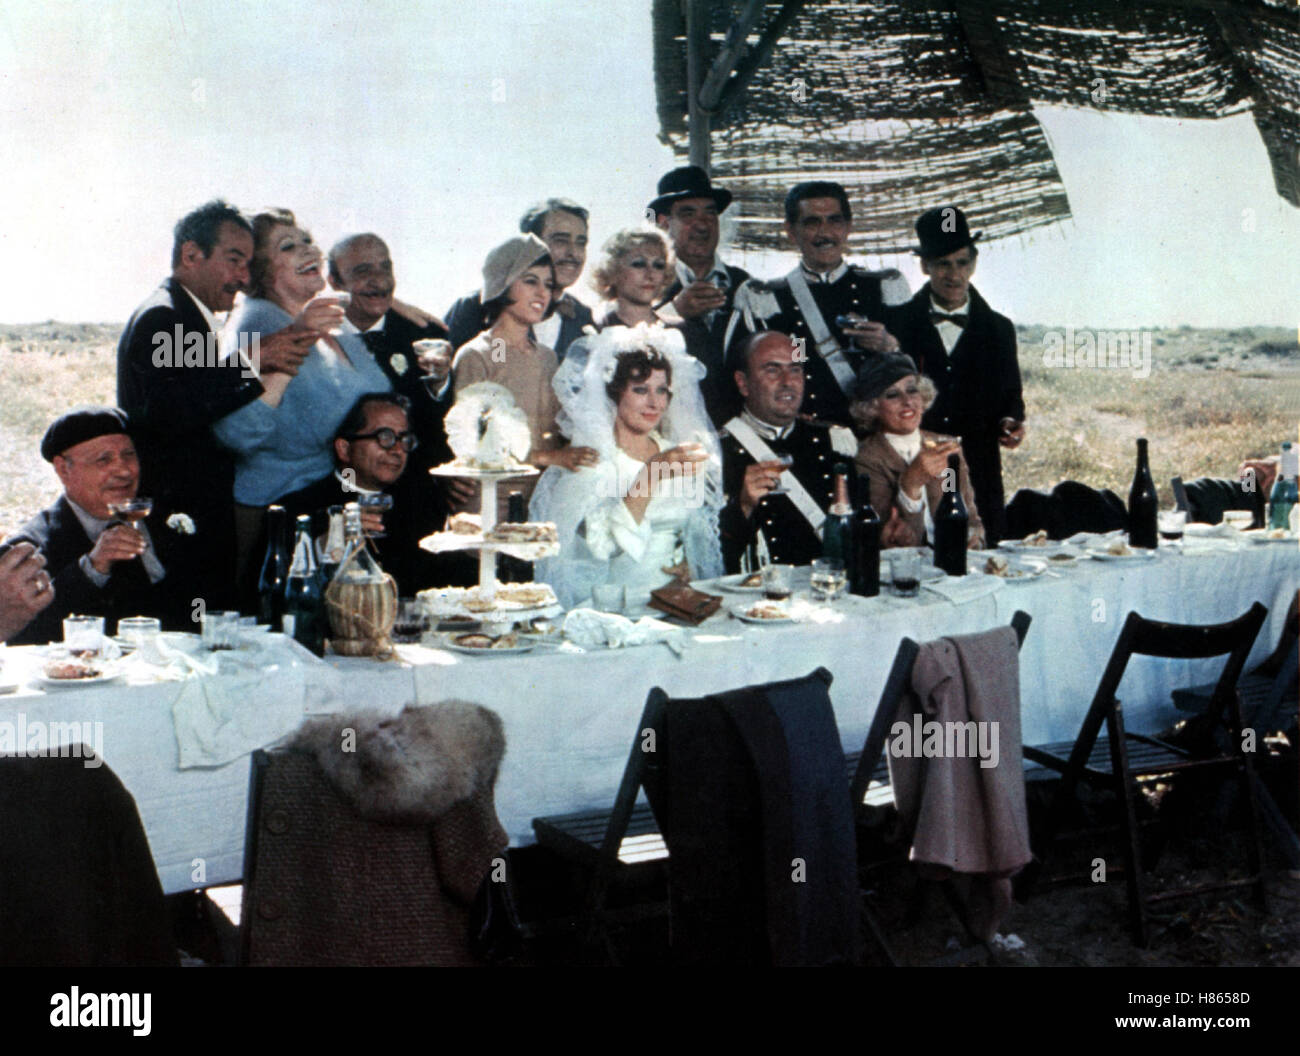 Amarcord (MAGALI NOEL) de 1973, la Regie: Federico Fellini, mit Hochzeitsszene MAGALI NOEL (Braut). Clave: Hochzeit, Hochzeitsgesellschaft, Brautpaar Foto de stock